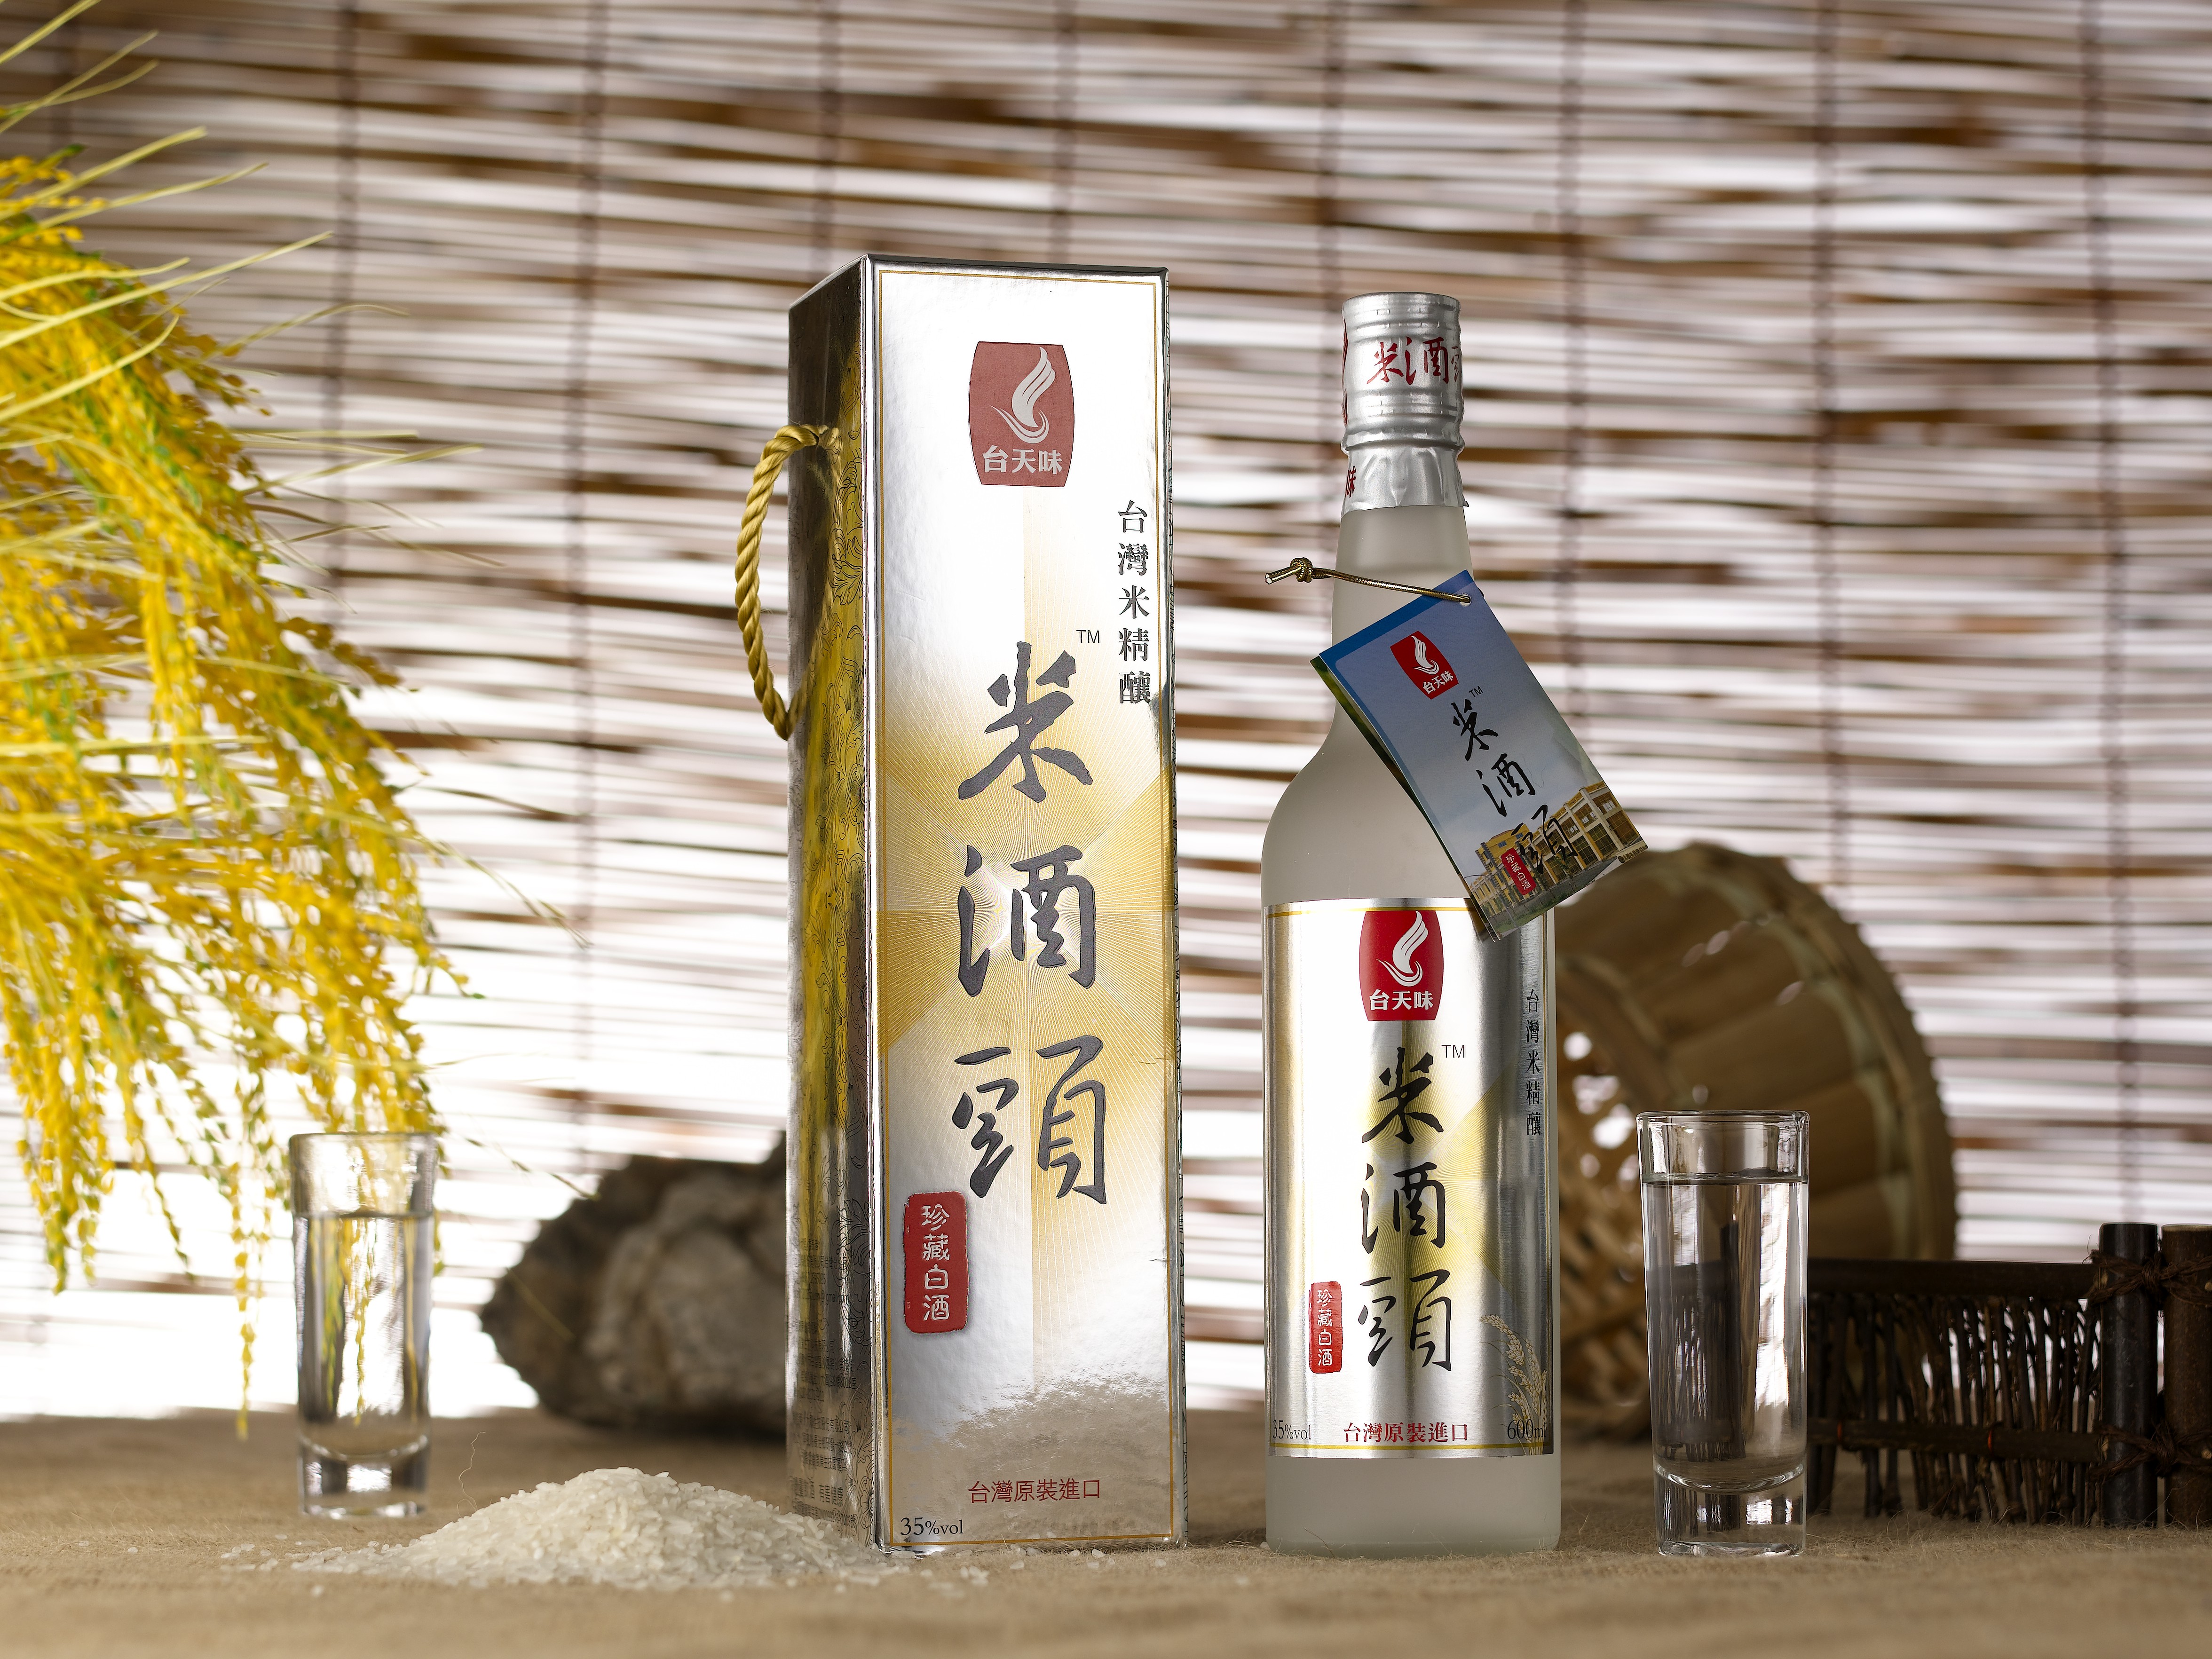 中国人情感传递的媒介 – 米酒